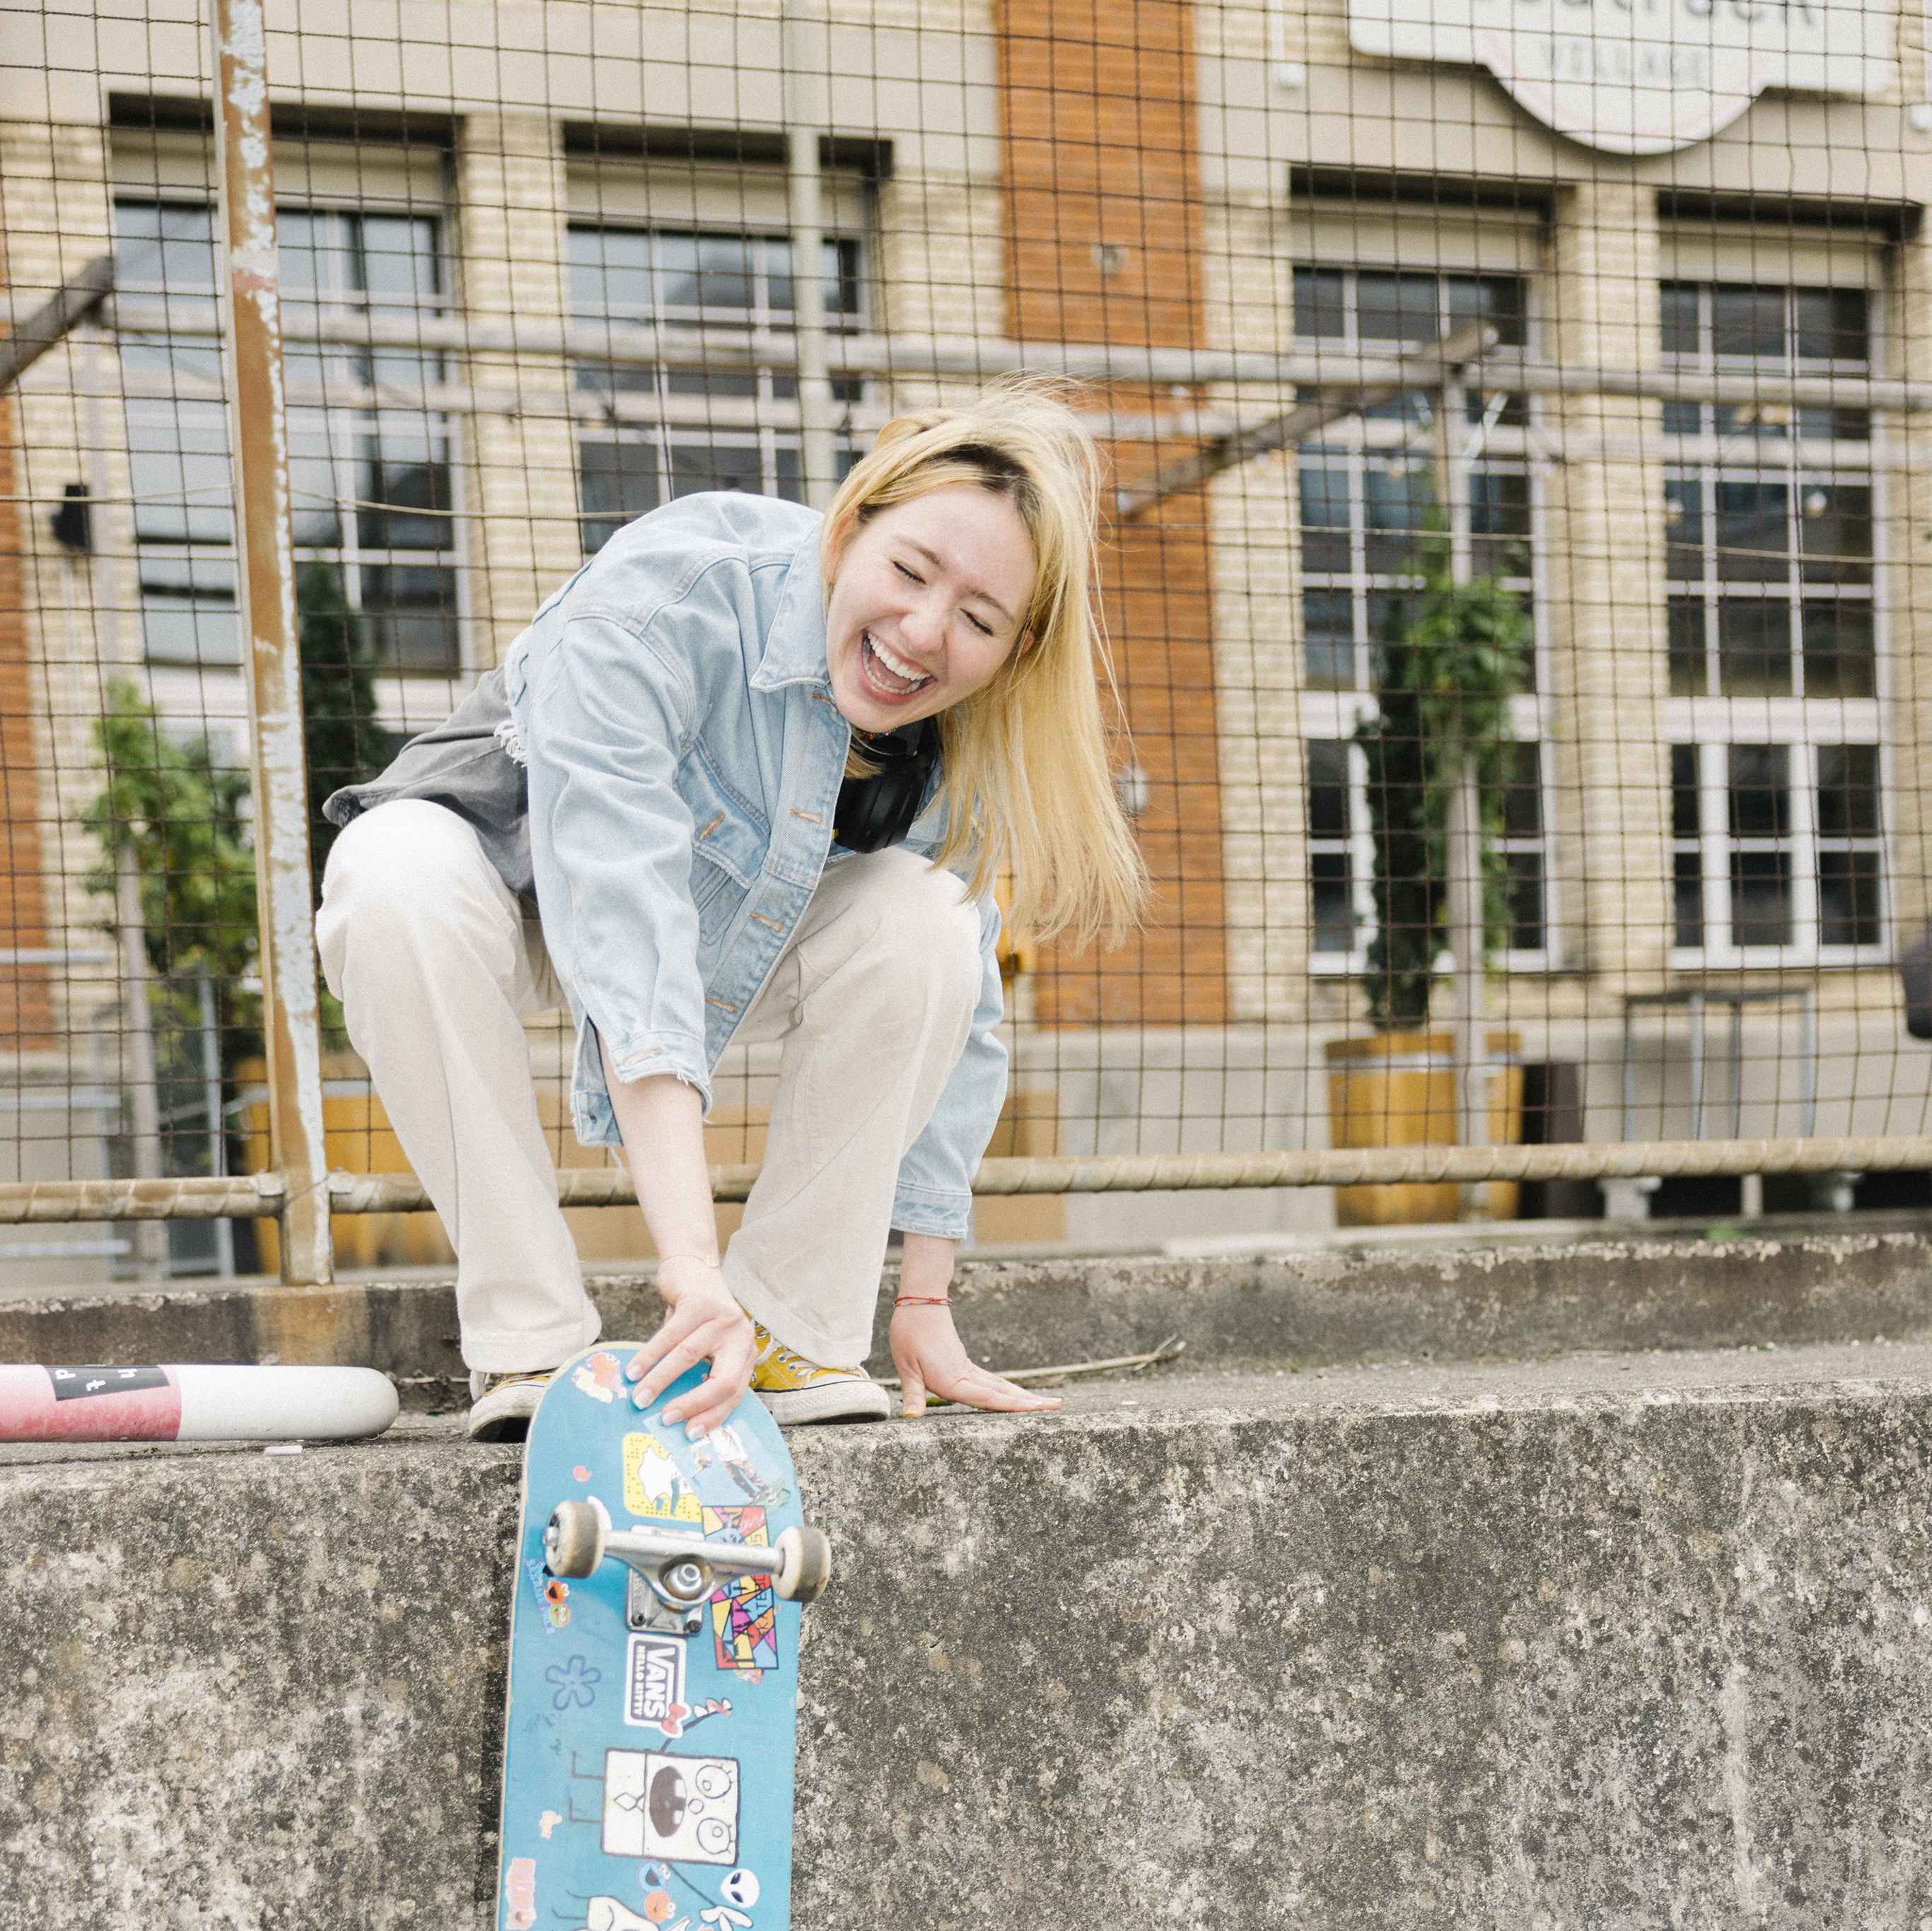 Una ragazza ride accovacciata su un muretto tenendo il suo skateboard.